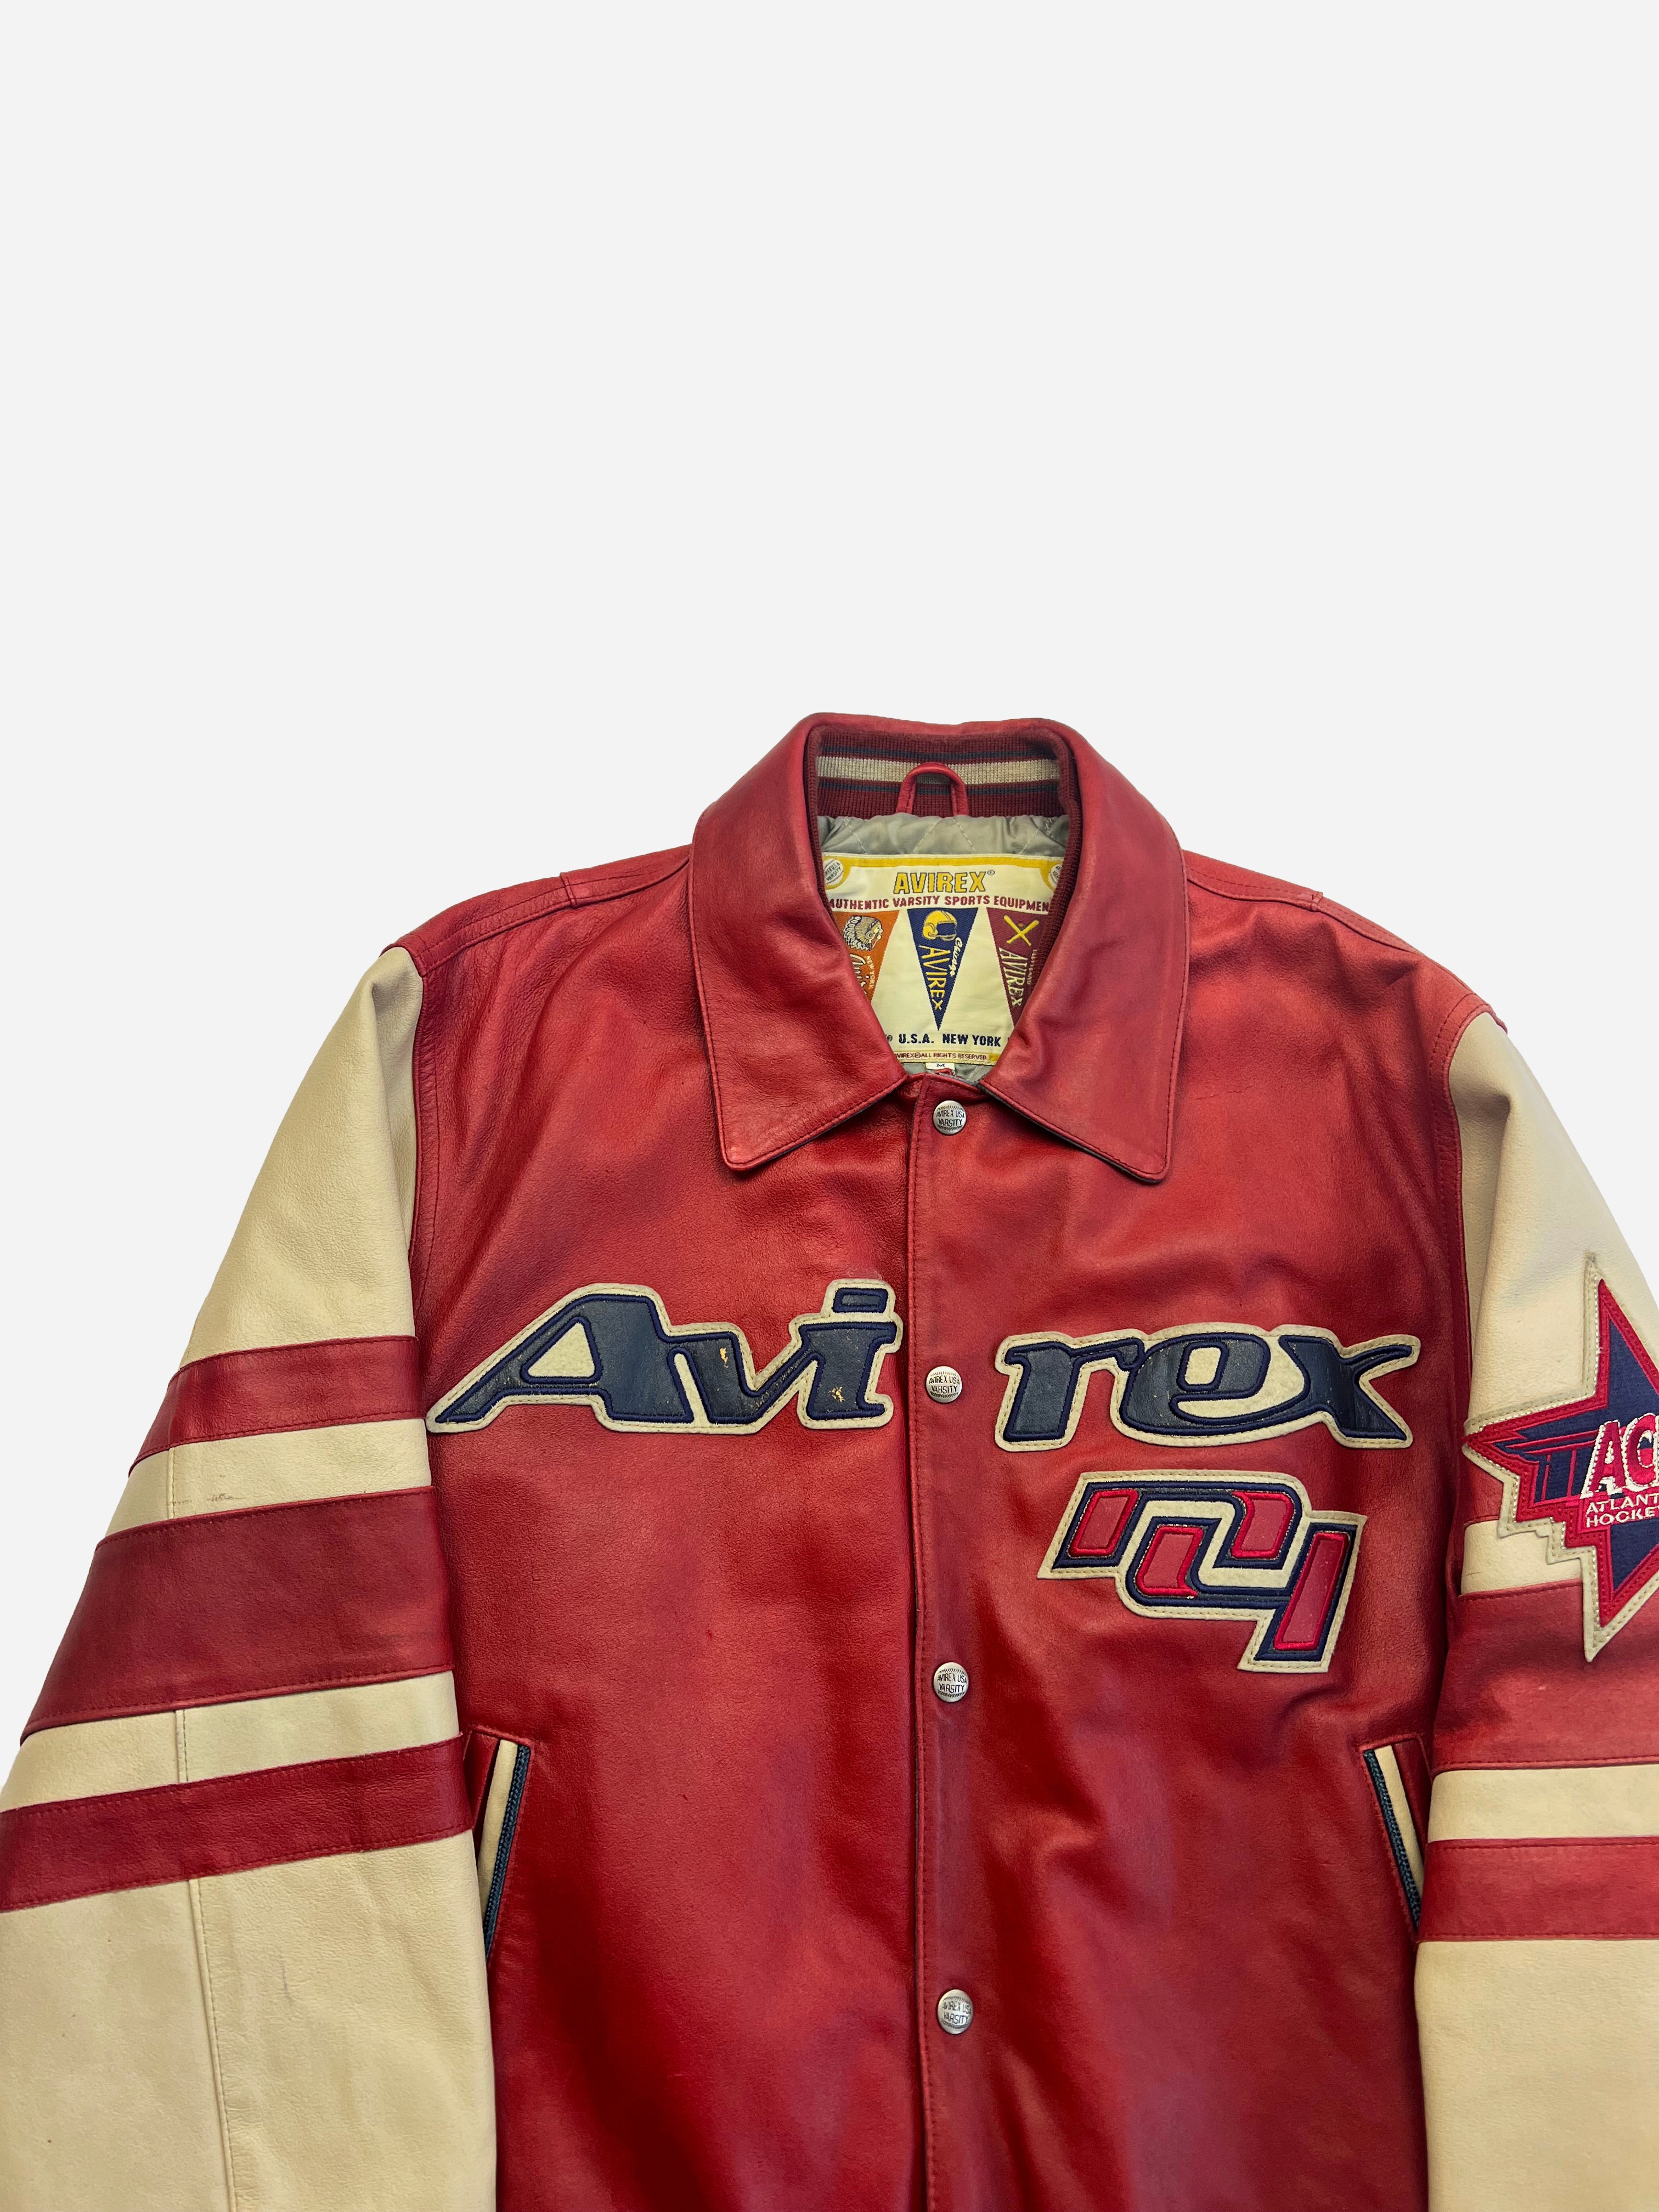 Avirex 'Goalers' Leather Jacket 90's